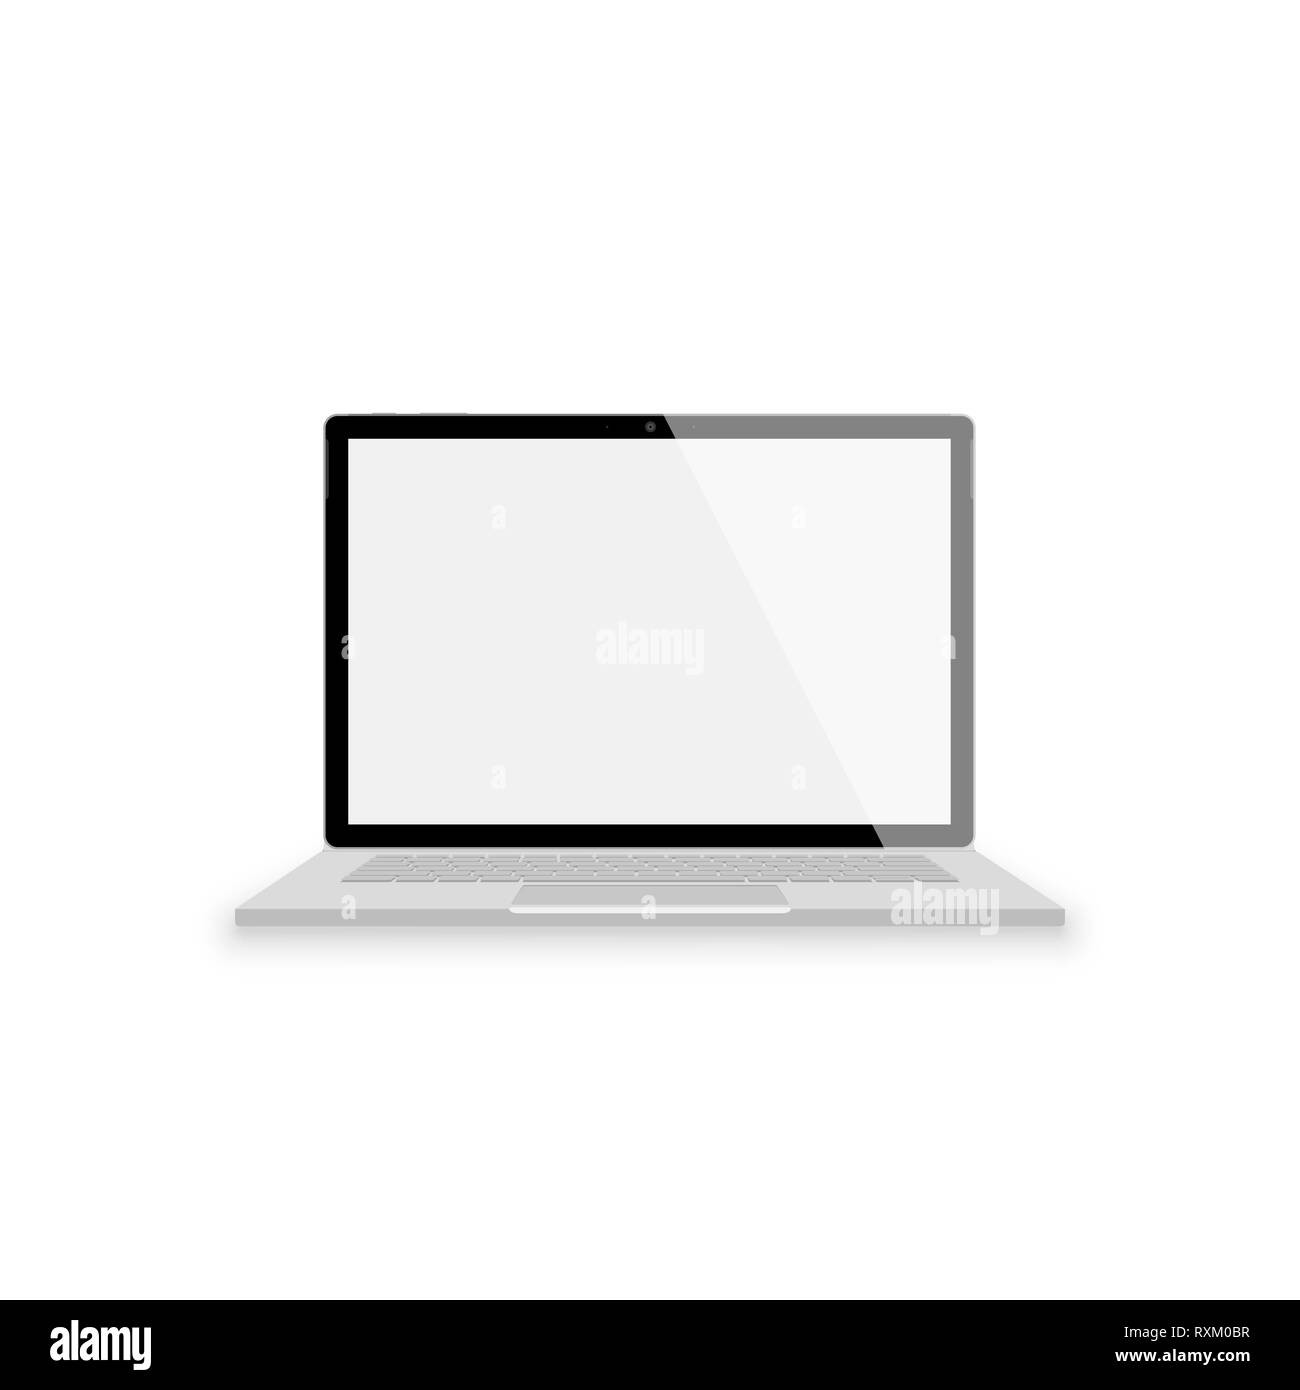 Realistico grigia laptop vista frontale. illustrazioni vettoriali isolati su sfondo bianco. portatile con gli Scrin vuota Illustrazione Vettoriale